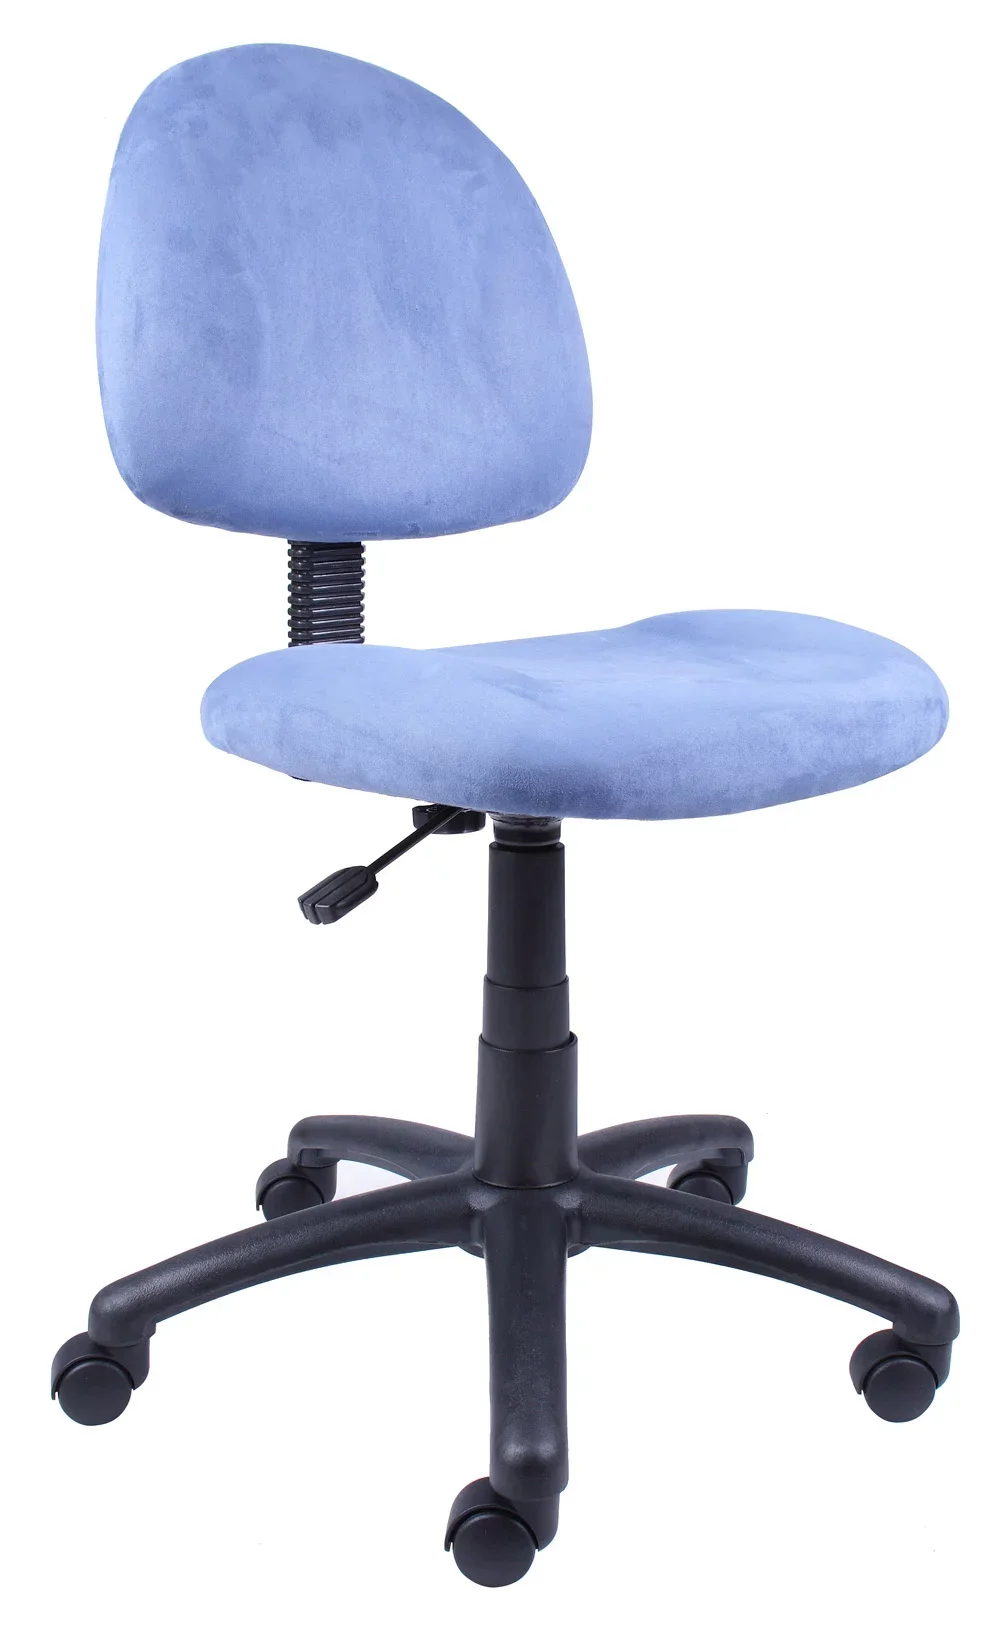 

Синее современное кресло для дома и офиса с идеальной осанкой Delubye, игровое кресло без рук, эргономичное кресло